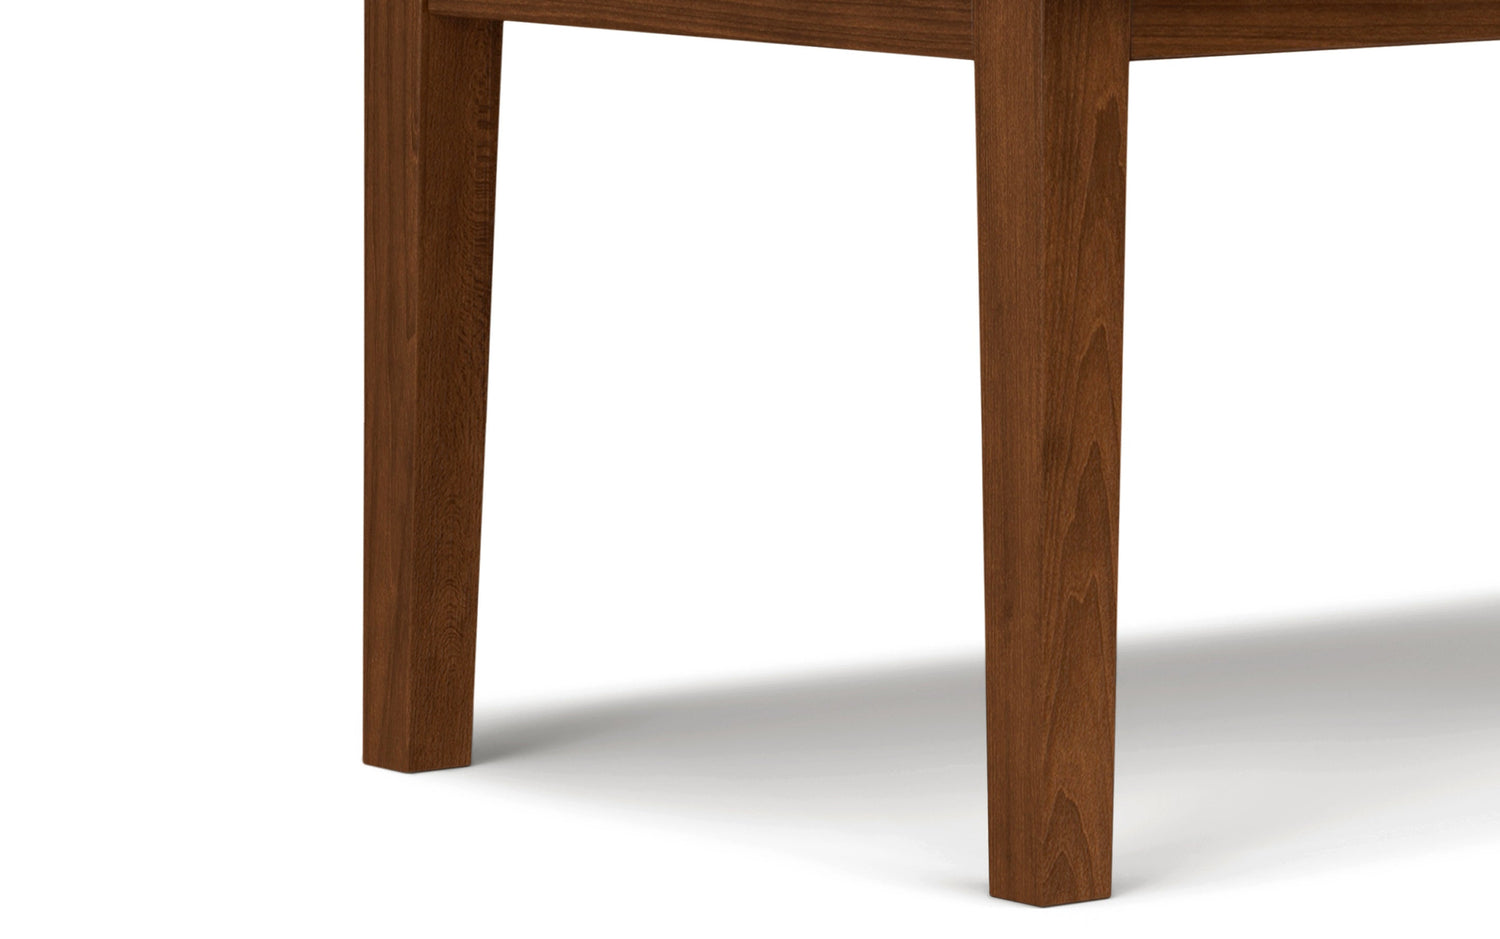 Walnut Solid Wood - Walnut Veneer | Eastwood Dining Table